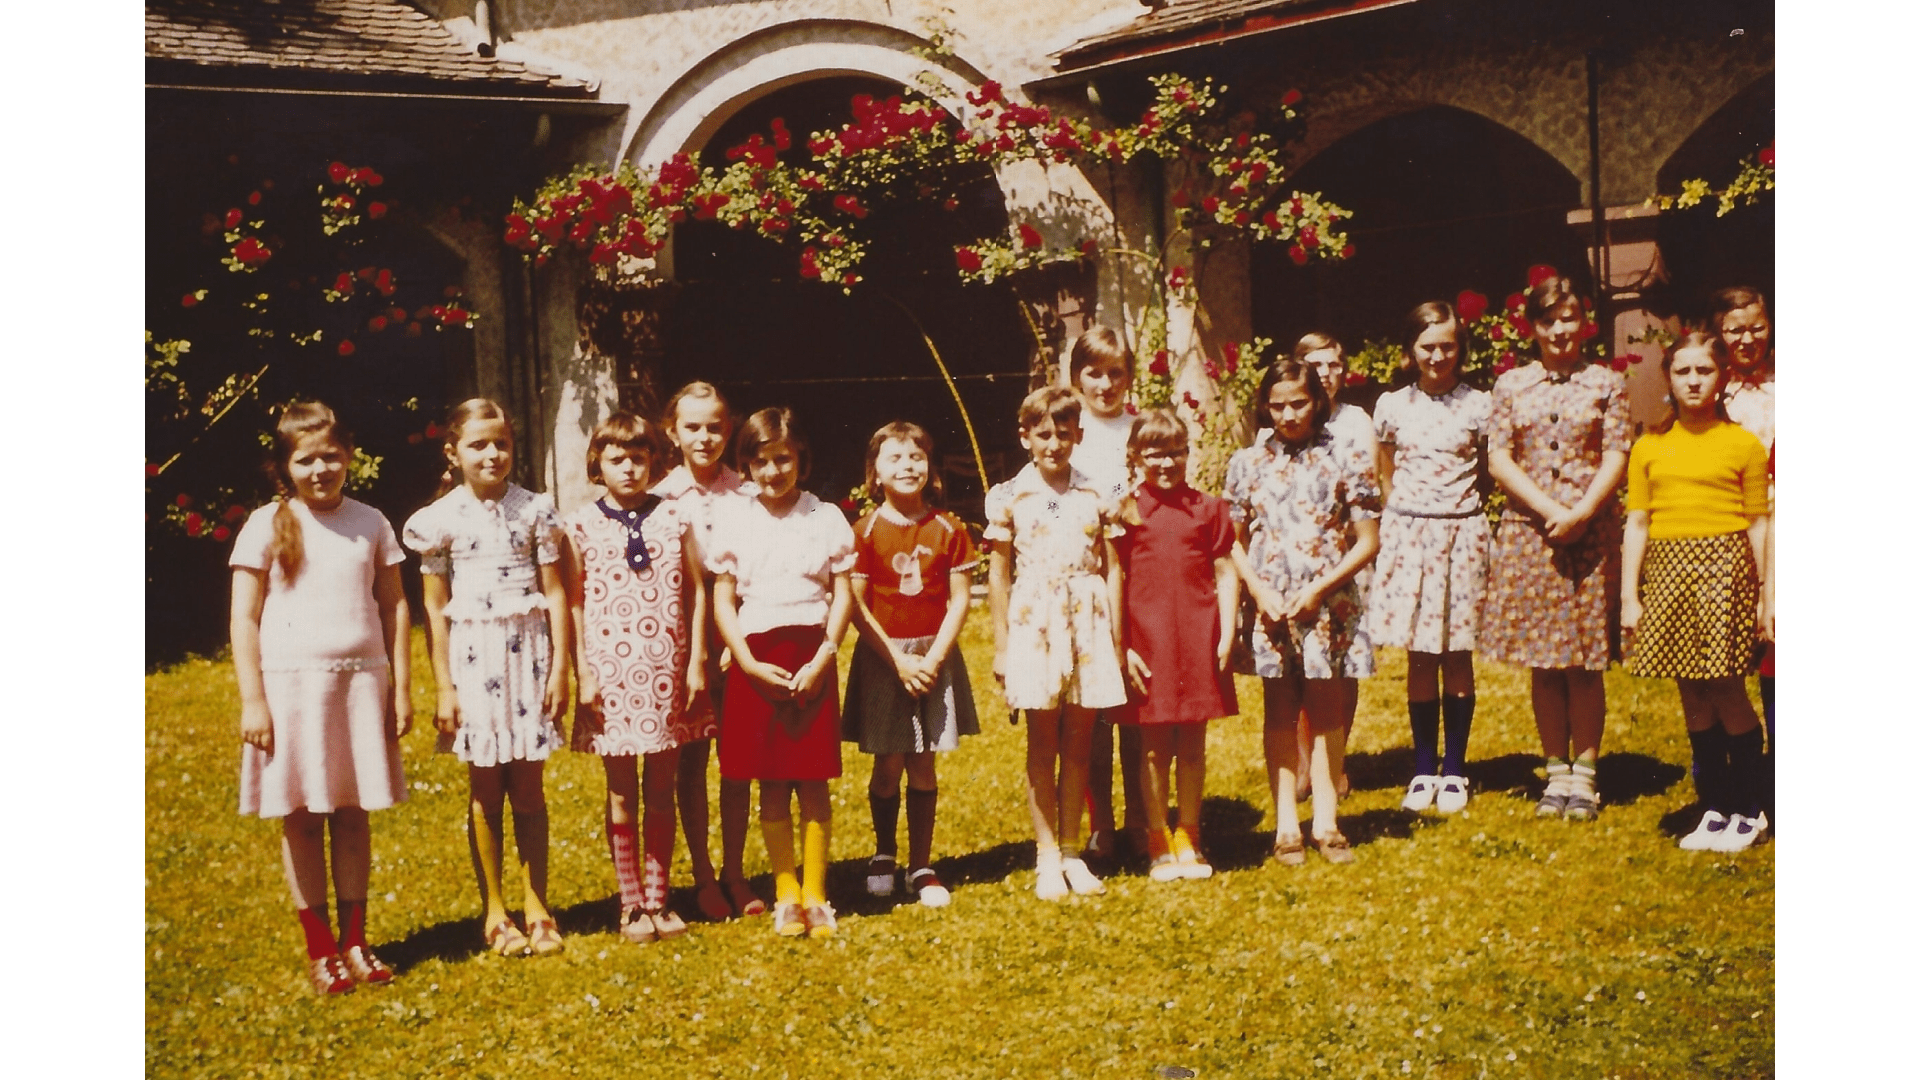 Der Klostergarten lädt zum Spielen in der Freizeit ein, Bild von 1966.  – Foto:- Archiv Arme Schulschwestern